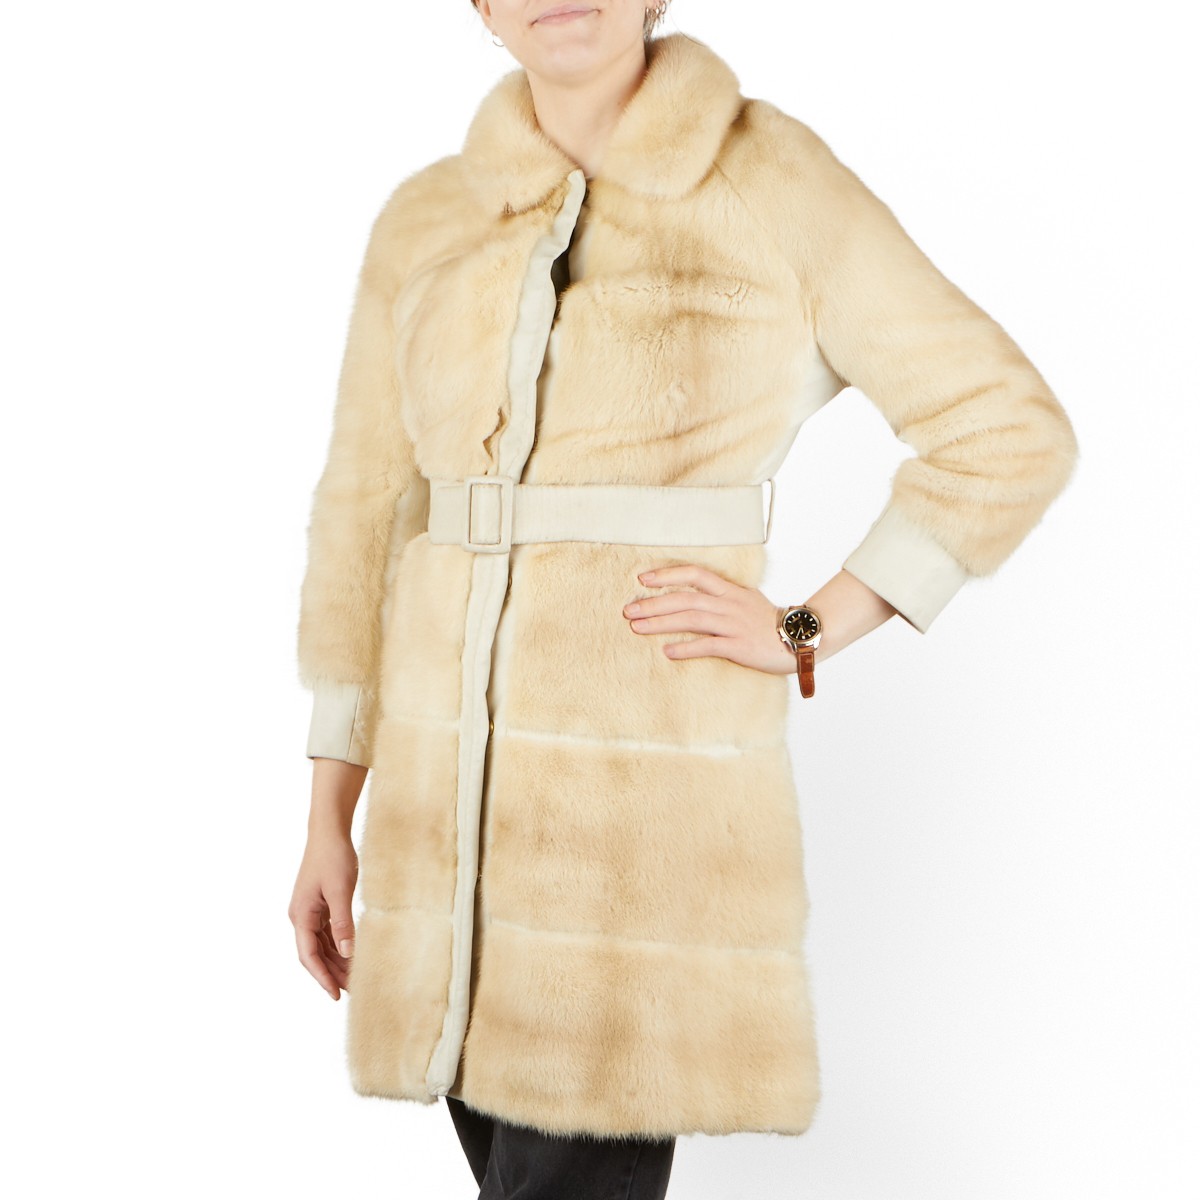 2 White Mink Fur Full Length Coats - Image 8 of 17